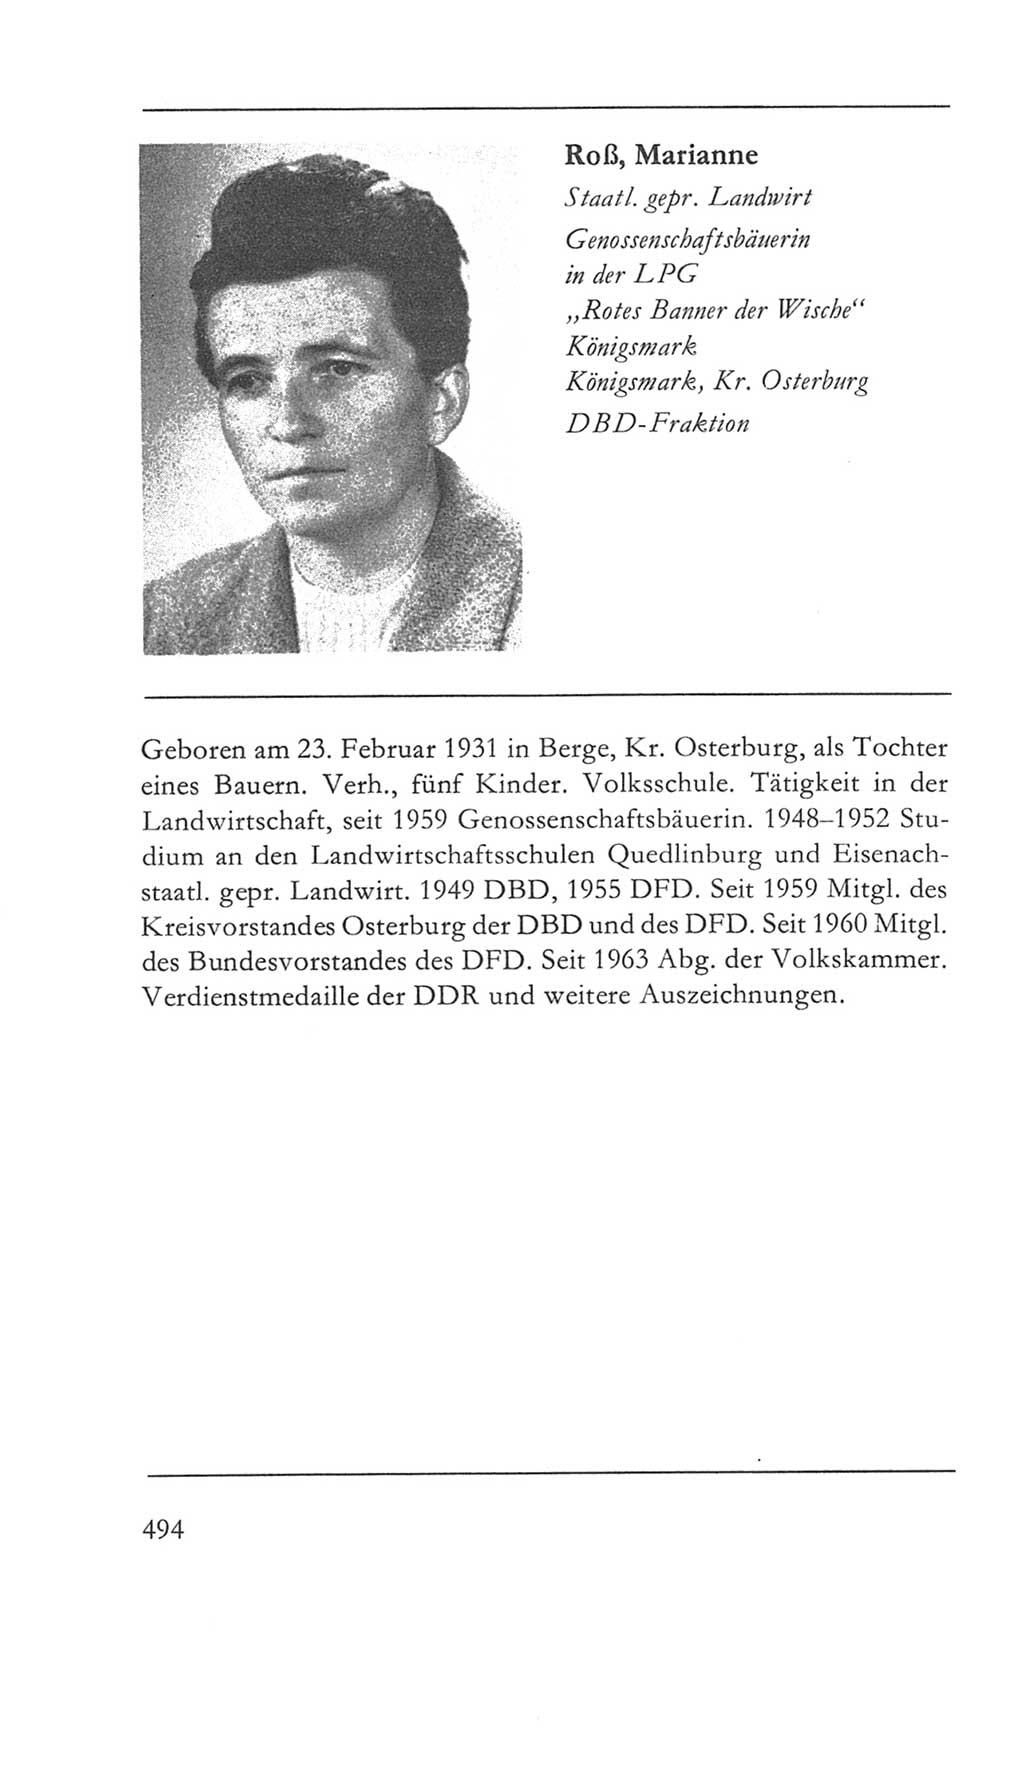 Volkskammer (VK) der Deutschen Demokratischen Republik (DDR) 5. Wahlperiode 1967-1971, Seite 494 (VK. DDR 5. WP. 1967-1971, S. 494)